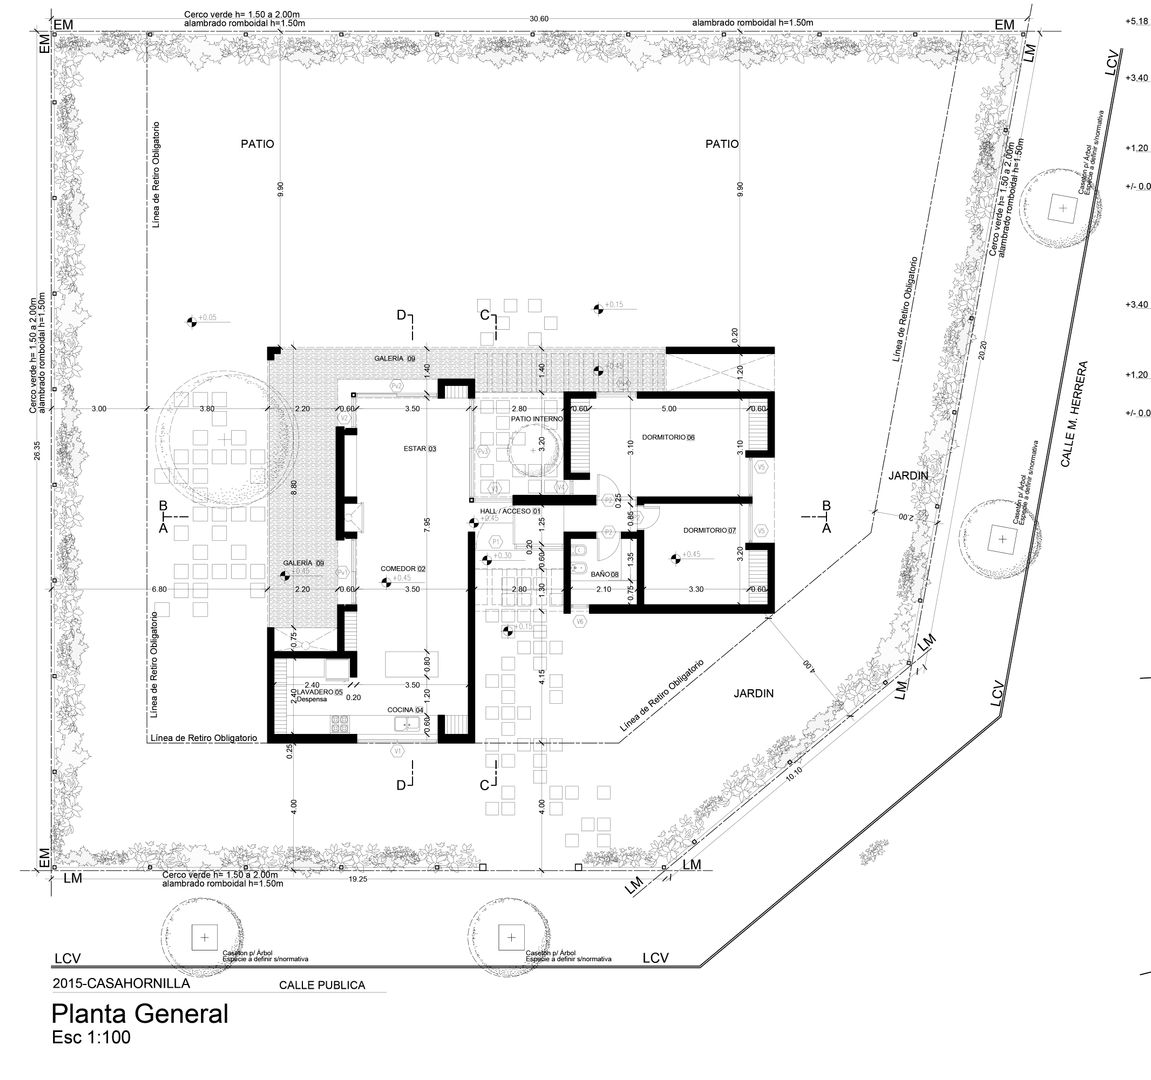 Diseño y construcción de Casa Blanca en "La Hornilla" por 1.61 Arquitectos, 1.61arquitectos 1.61arquitectos Single family home